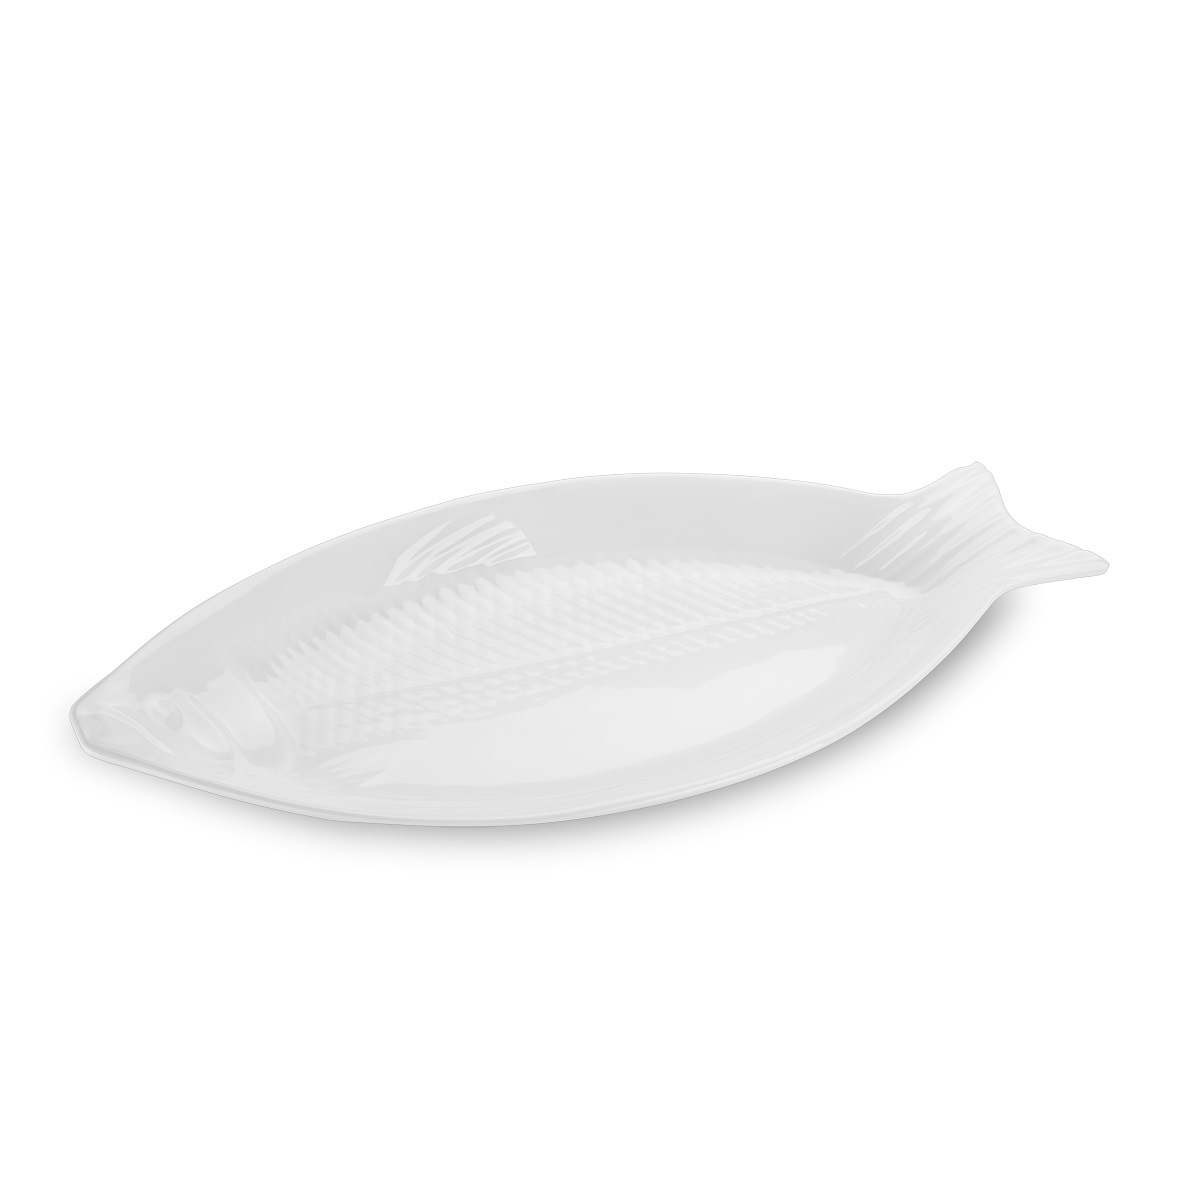 Travessa melamina peixe Texture branca 28x13,5x7 cm Haus Brinox